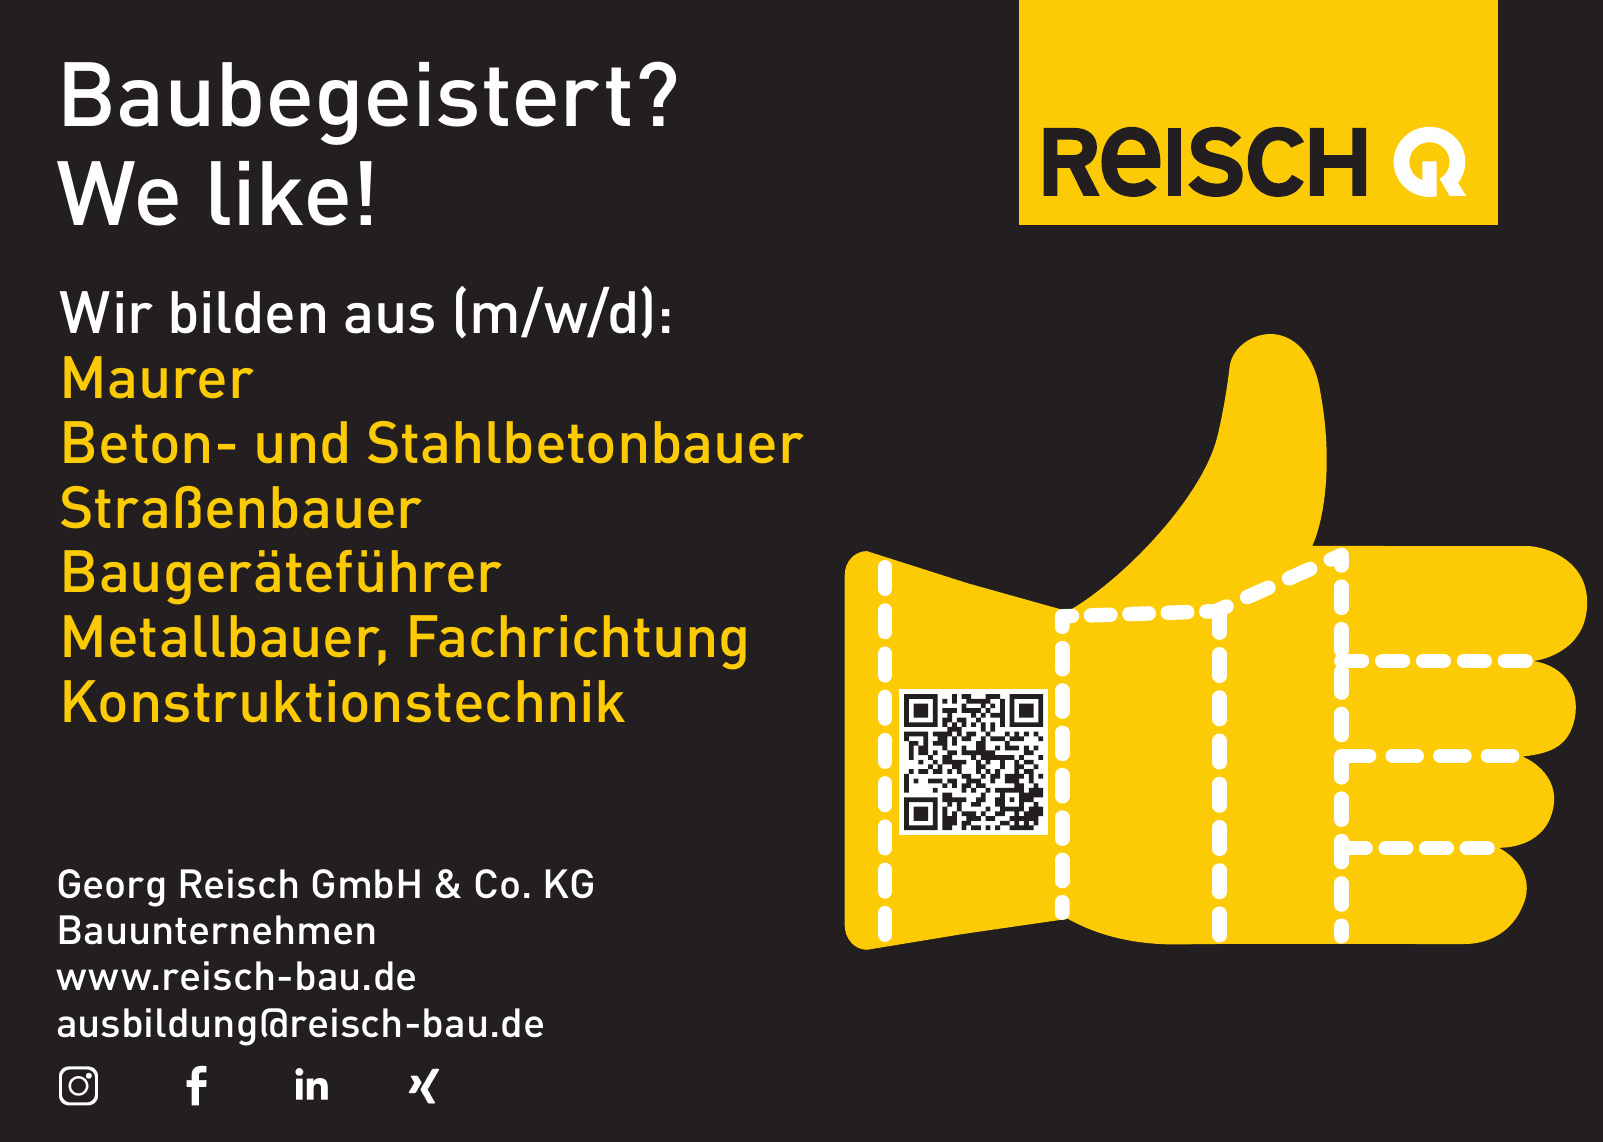 Georg Reisch GmbH & Co. KG Bauunternehmen